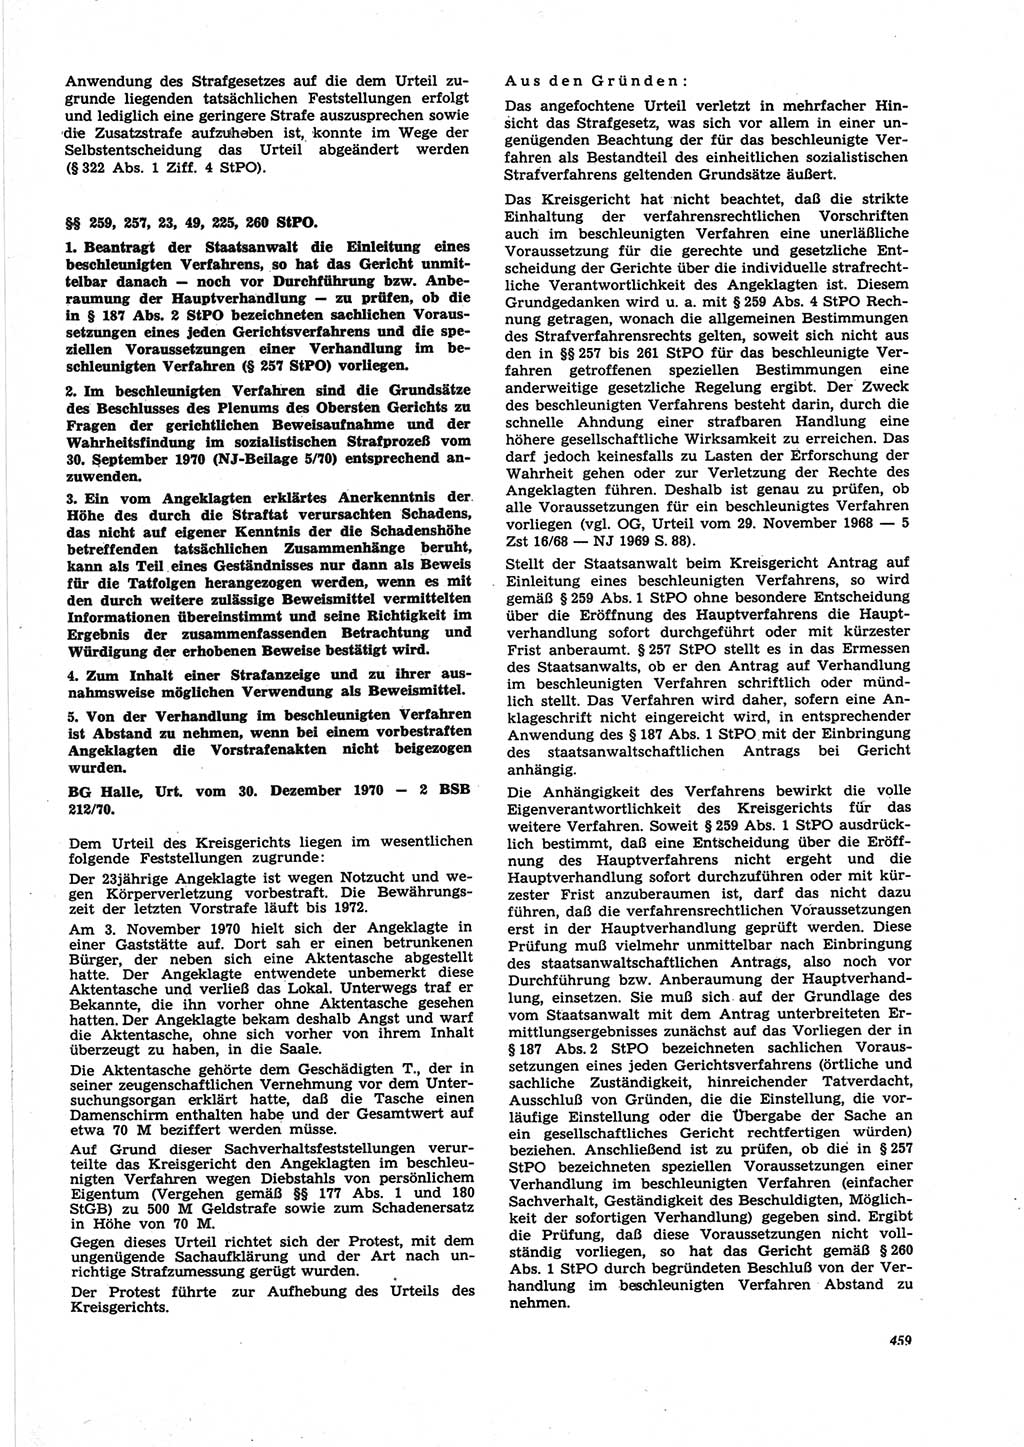 Neue Justiz (NJ), Zeitschrift für Recht und Rechtswissenschaft [Deutsche Demokratische Republik (DDR)], 25. Jahrgang 1971, Seite 459 (NJ DDR 1971, S. 459)